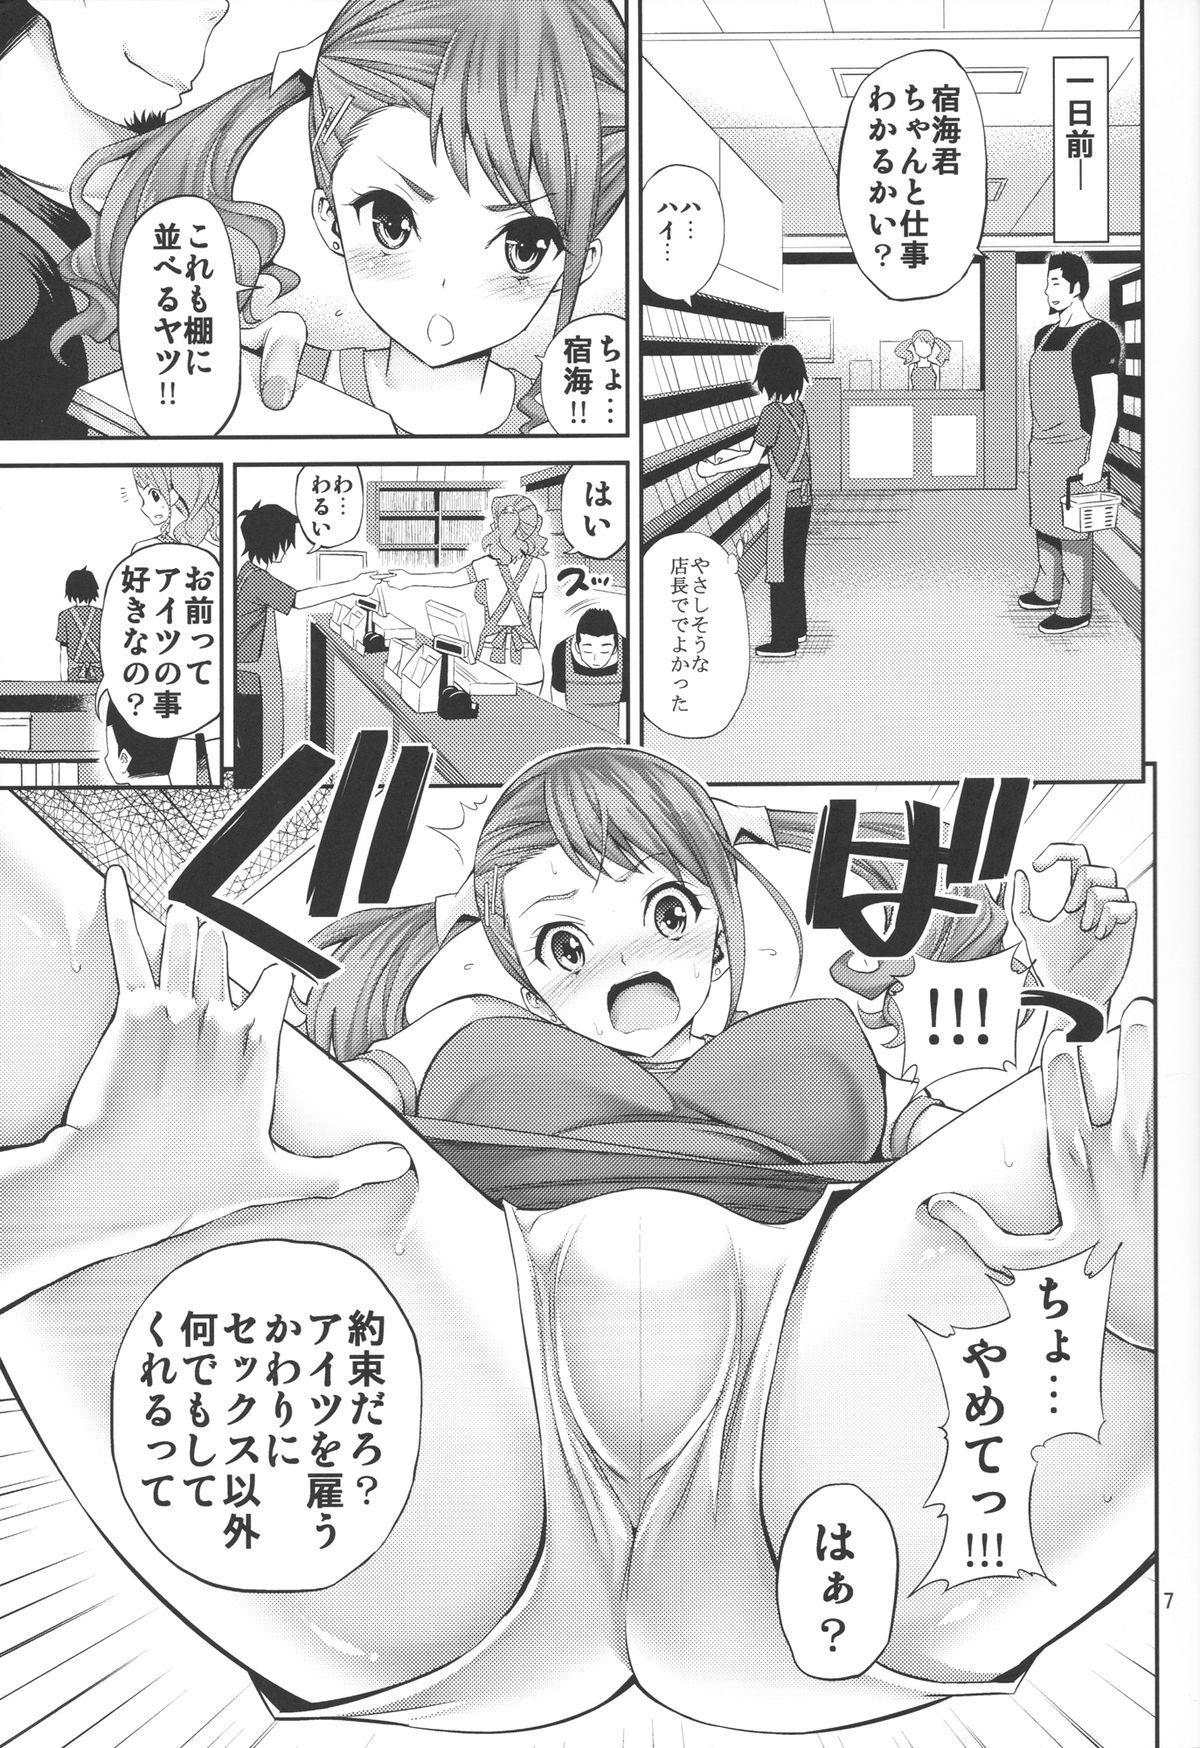 Ano Anaru no Sundome Manga o Bokutachi wa Mada Shiranai. 5